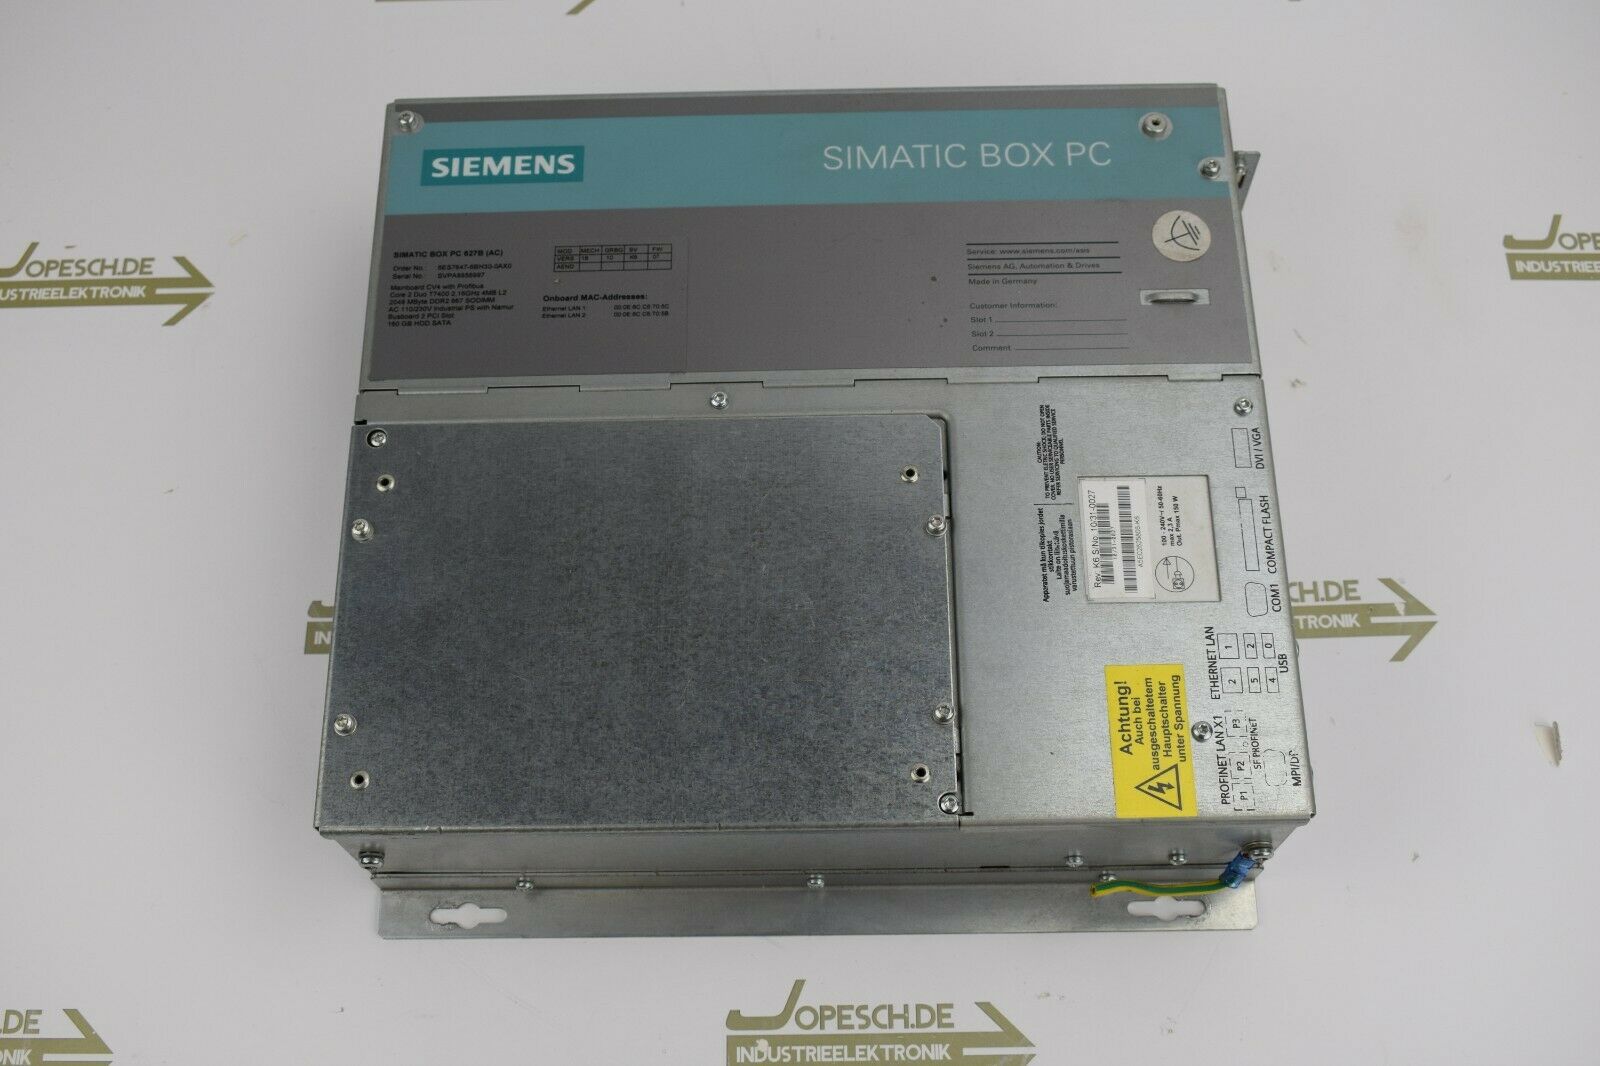 Siemens simatic BOX PC 627B 6ES7 647-6BH30-0AX0 ( 6ES7647-0BH30-0AX0 )